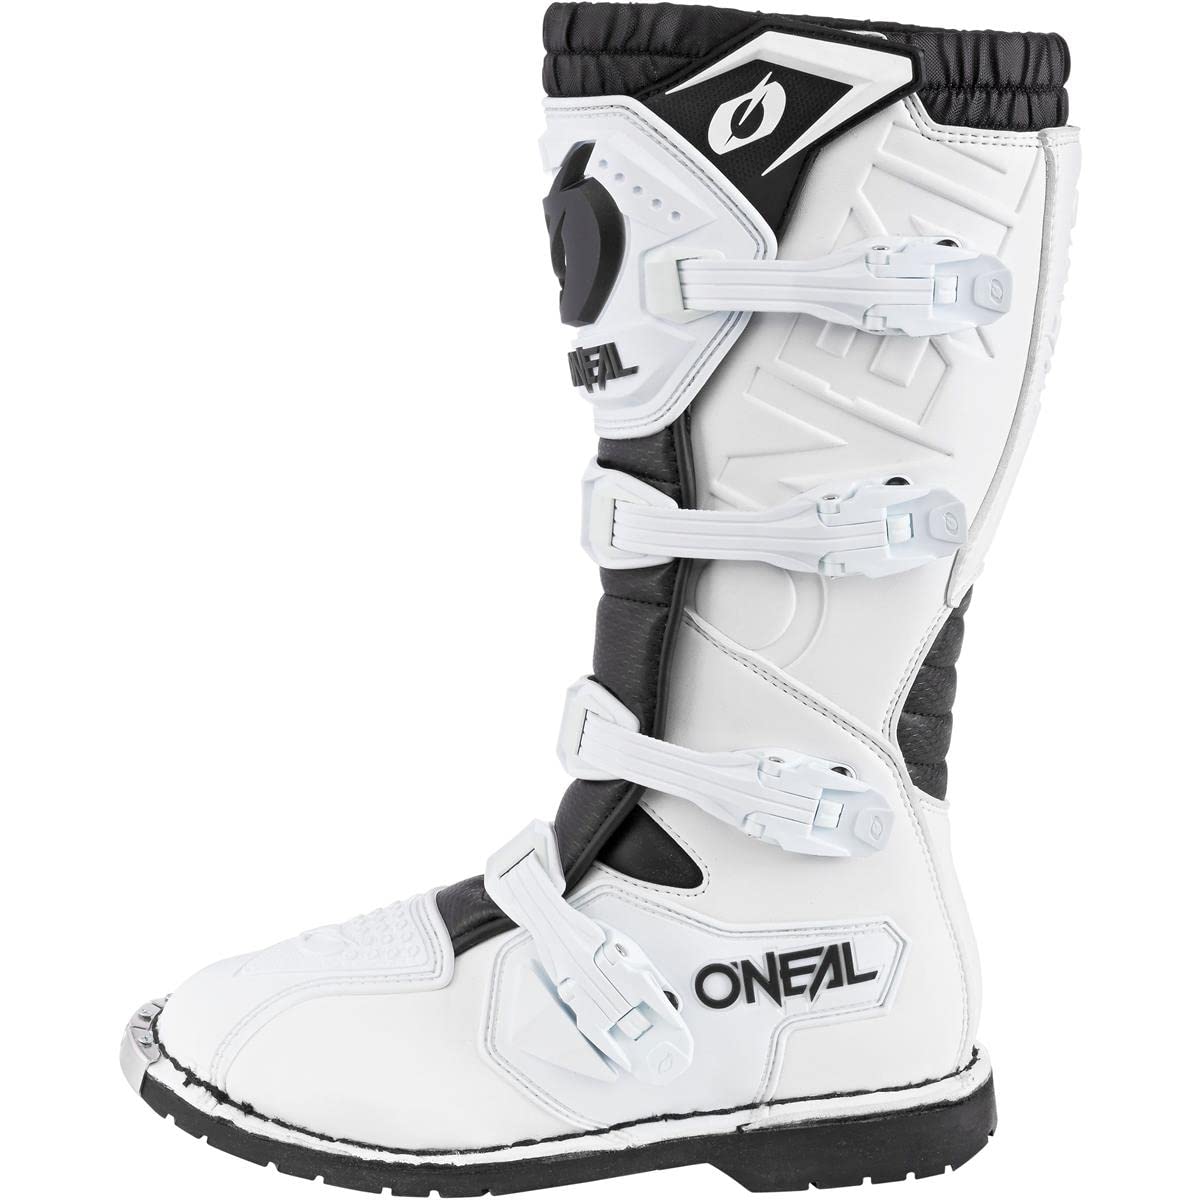 O'NEAL | Motocross-Stiefel | Enduro Motorrad | Komfort durch Air-Mesh-Innenleben, verstellbare Verschlussschnallen, hochwertiges Synthetik-Material | Boots Rider Pro | Erwachsene | Weiß | Größe 40